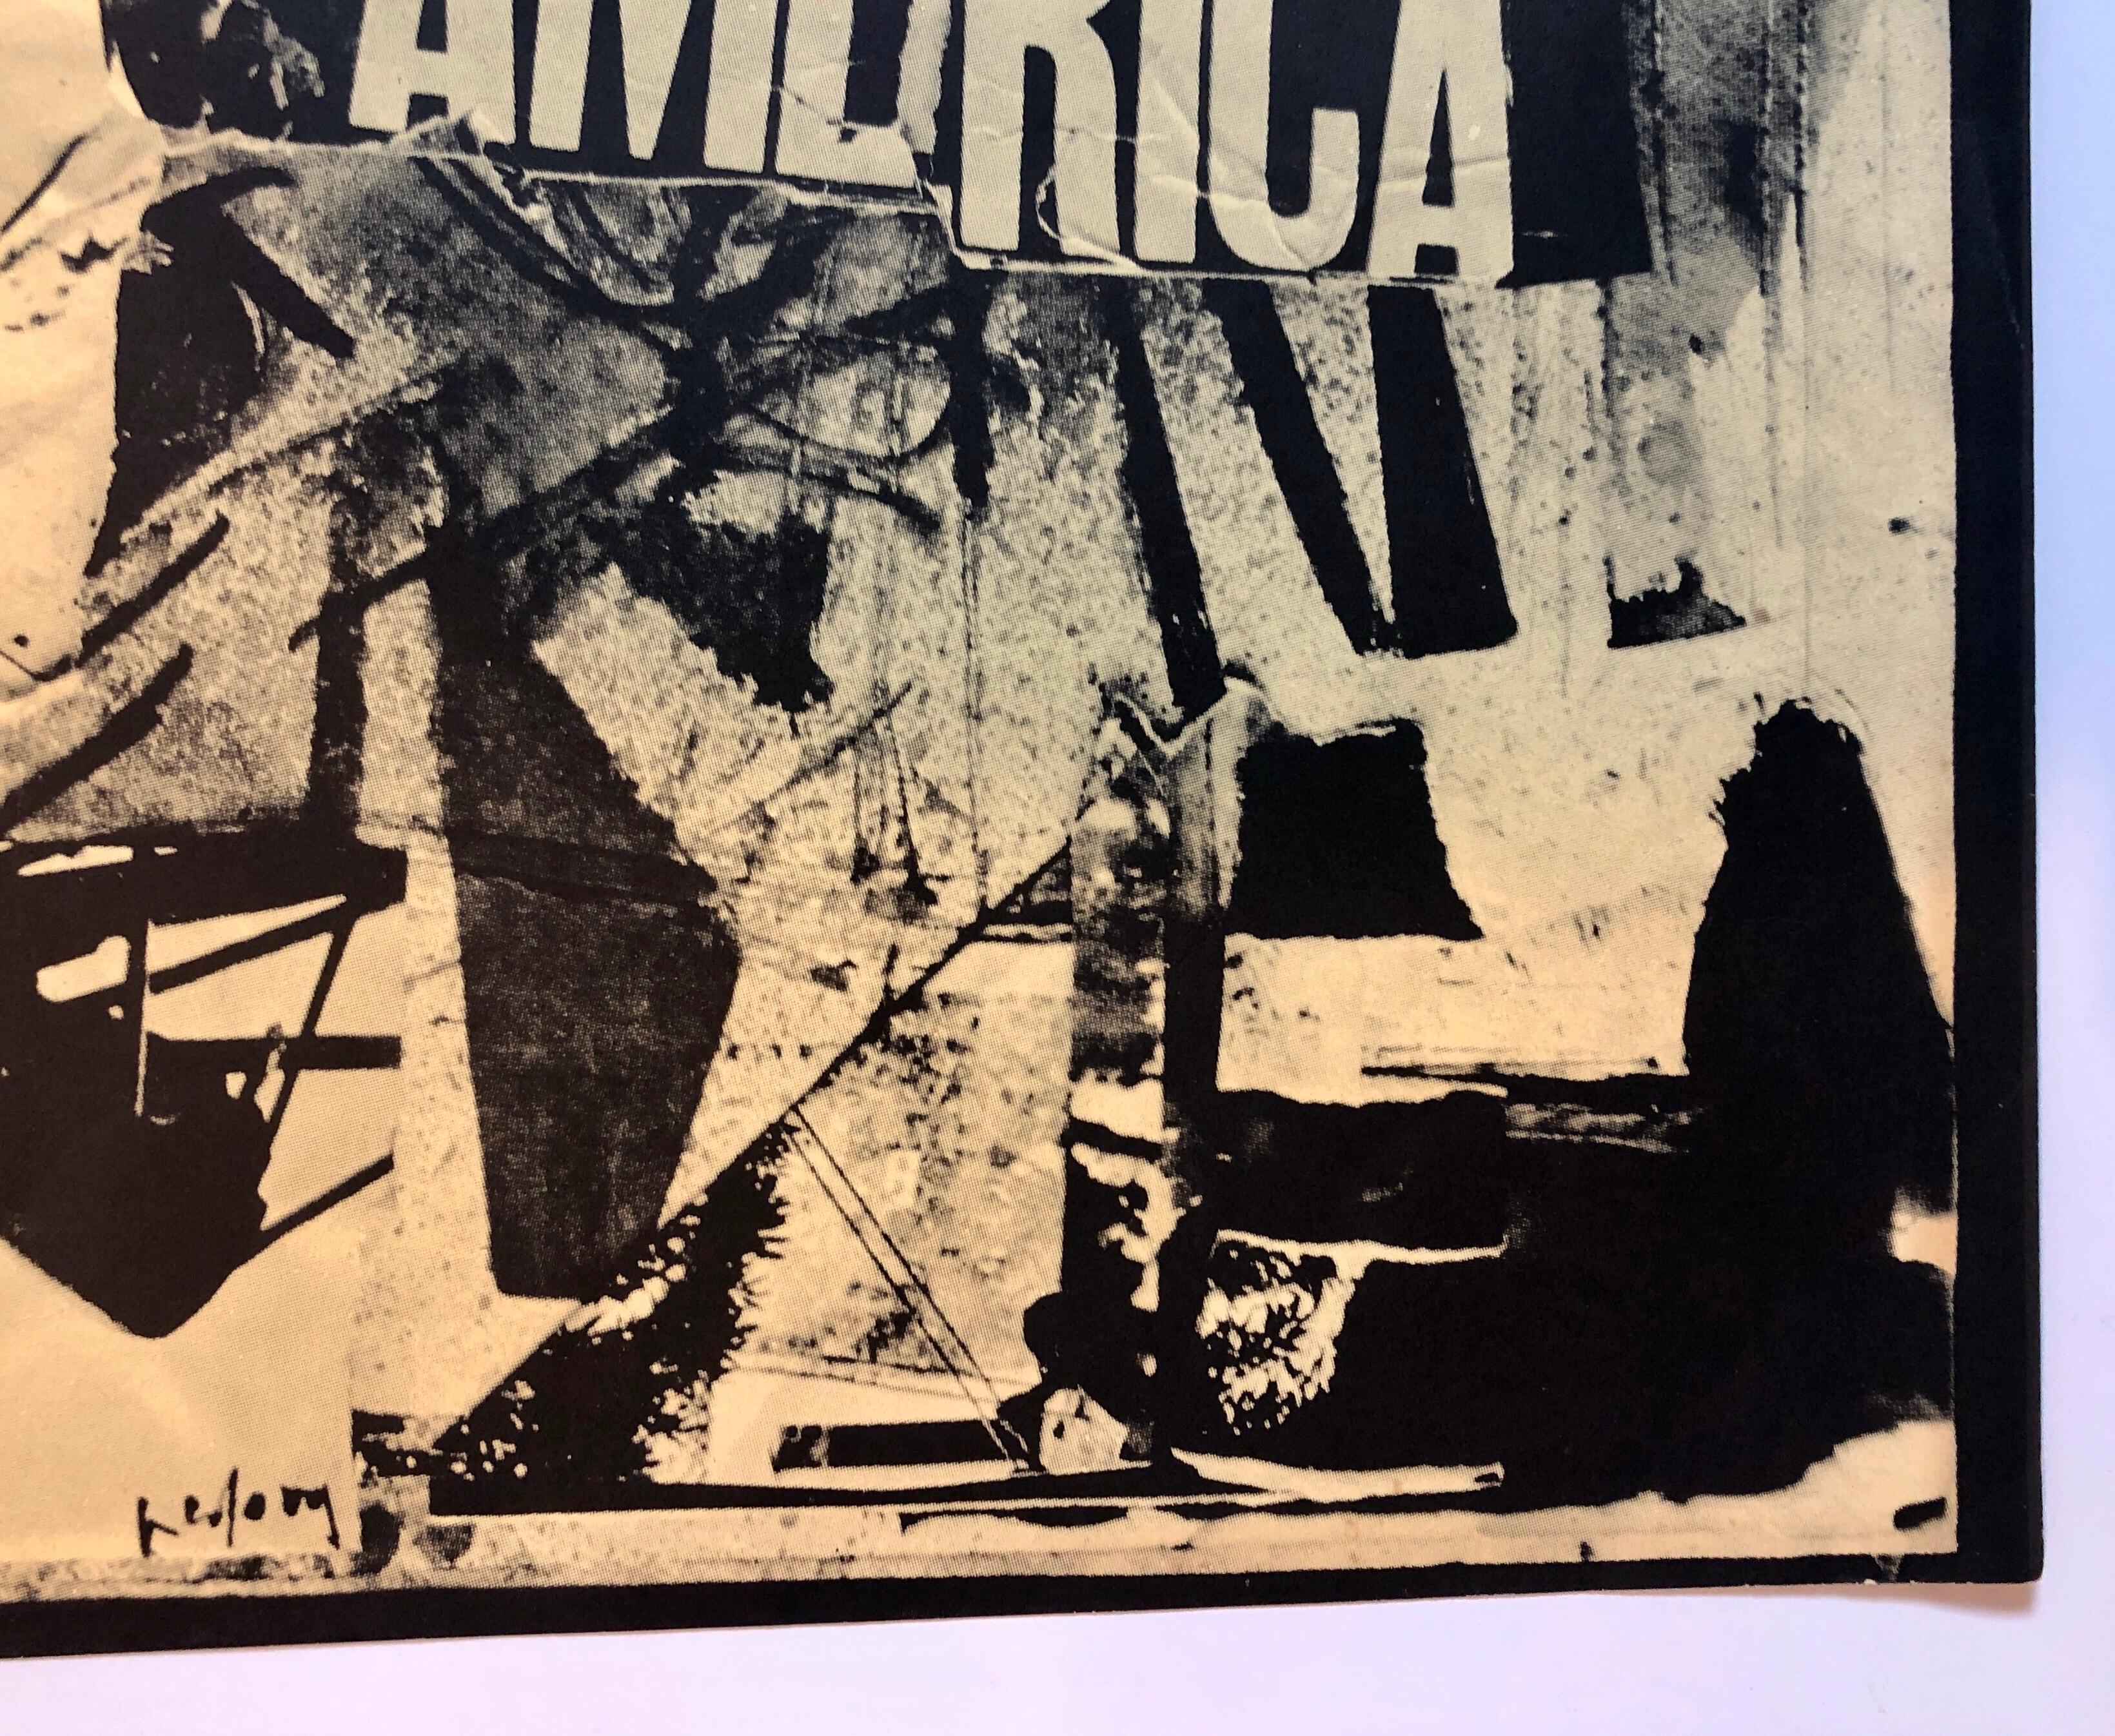 Italian Abstract Collage 'No a Questa America' Large Screenprint Hand Signed - Arte Povera Print by Emilio Vedova